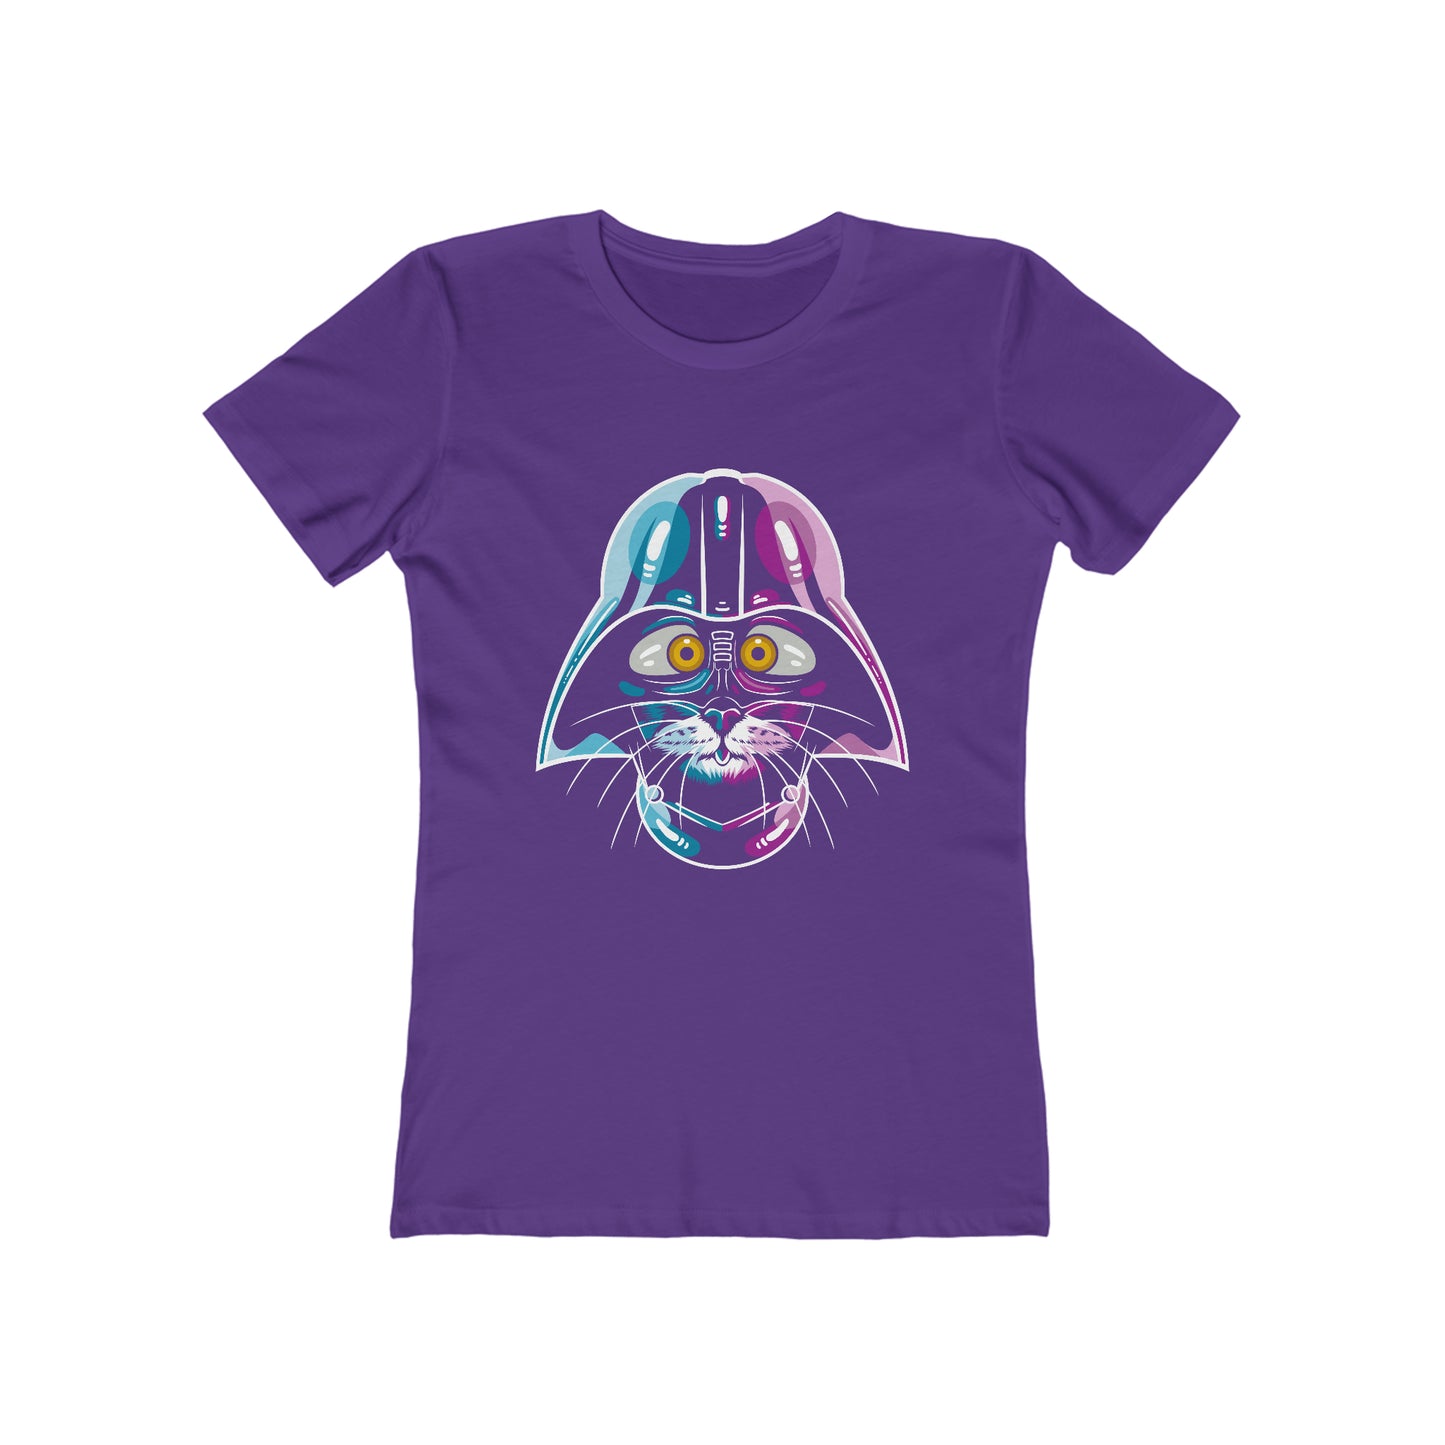 Cat Vader - Women's T-shirt